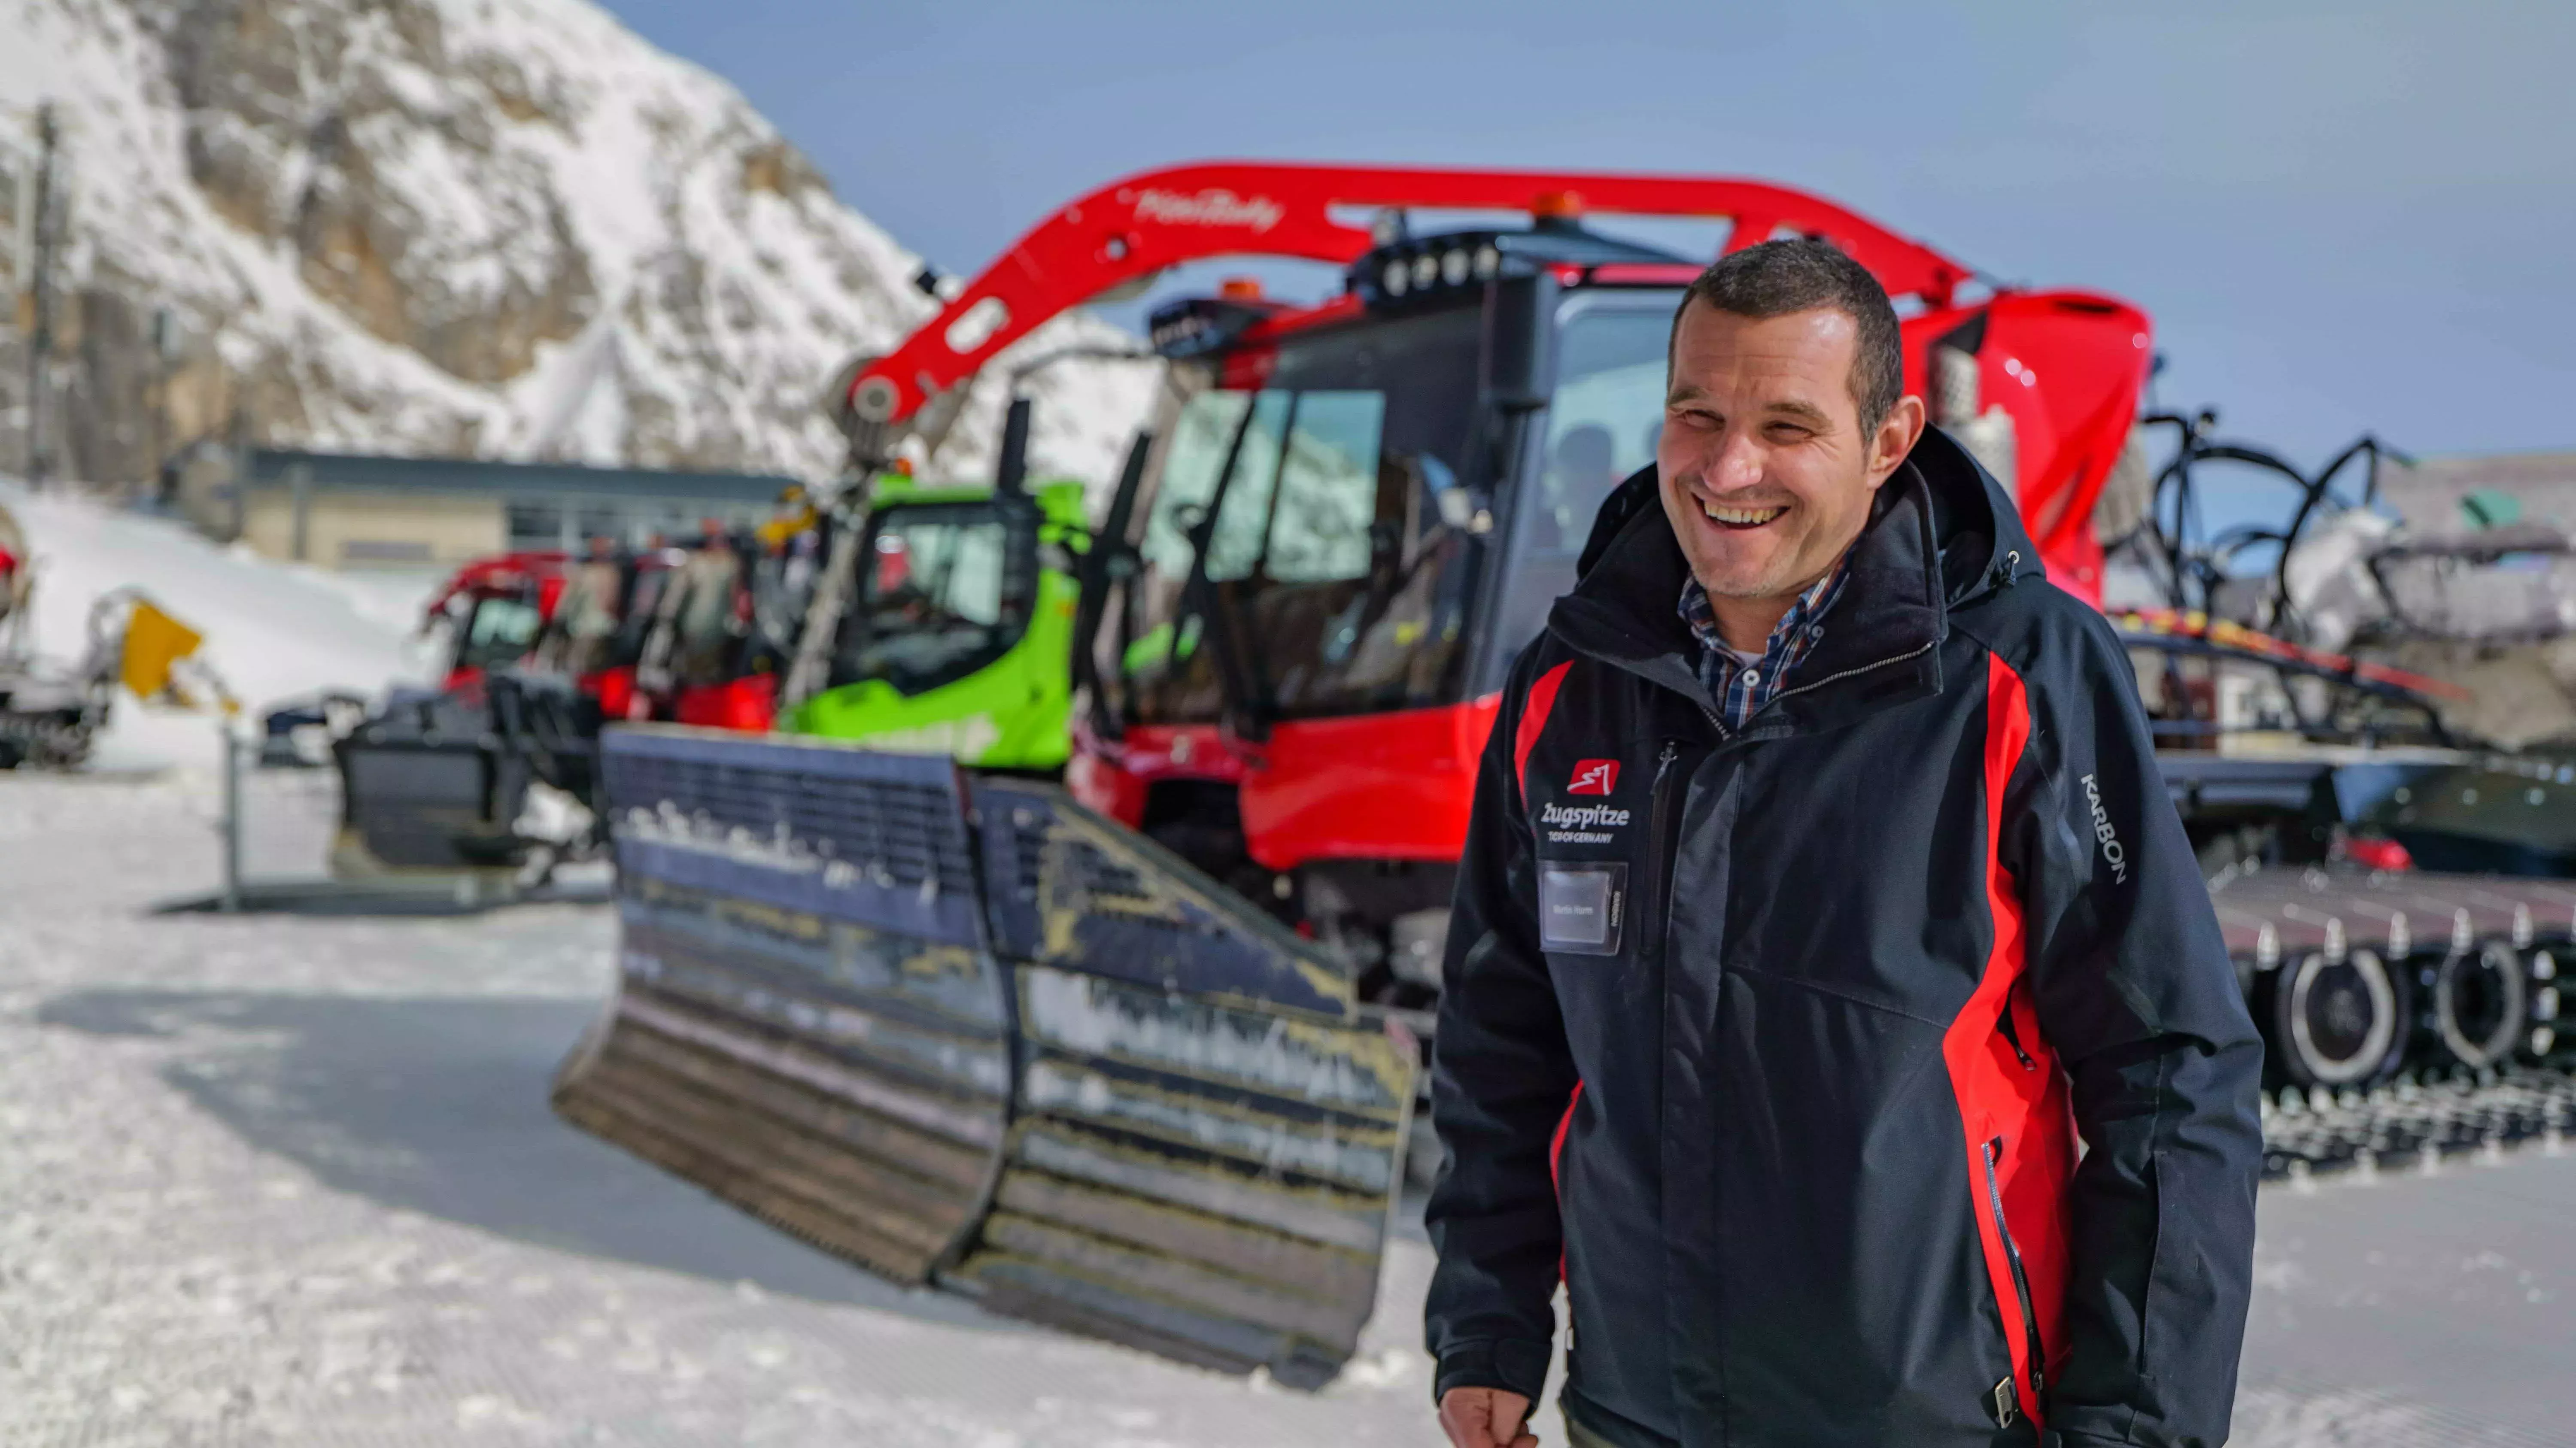 Martin Hurm, Betriebsleiter der Bayerischen Zugspitzbahn Bergbahn AG, ist schon heute begeistert von der neuen SNOWsat Lösung